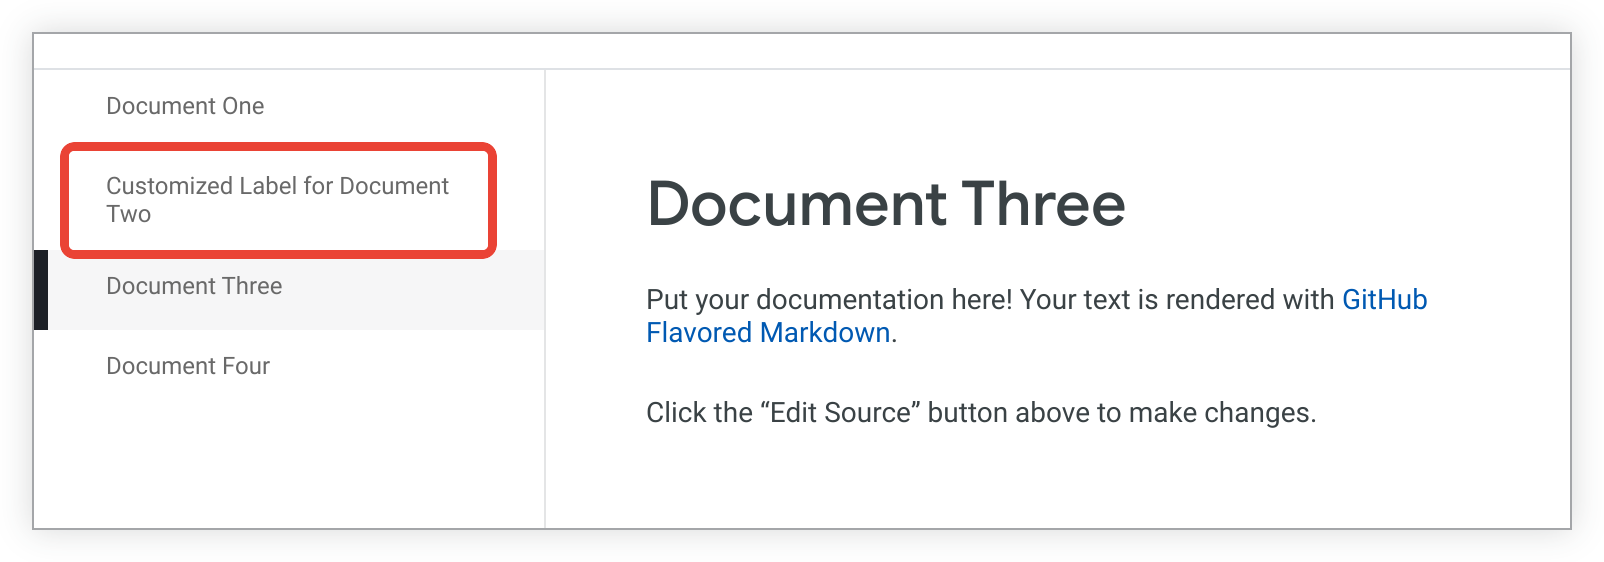 La página document_two aparece como etiqueta personalizada para el Documento dos en la barra lateral.